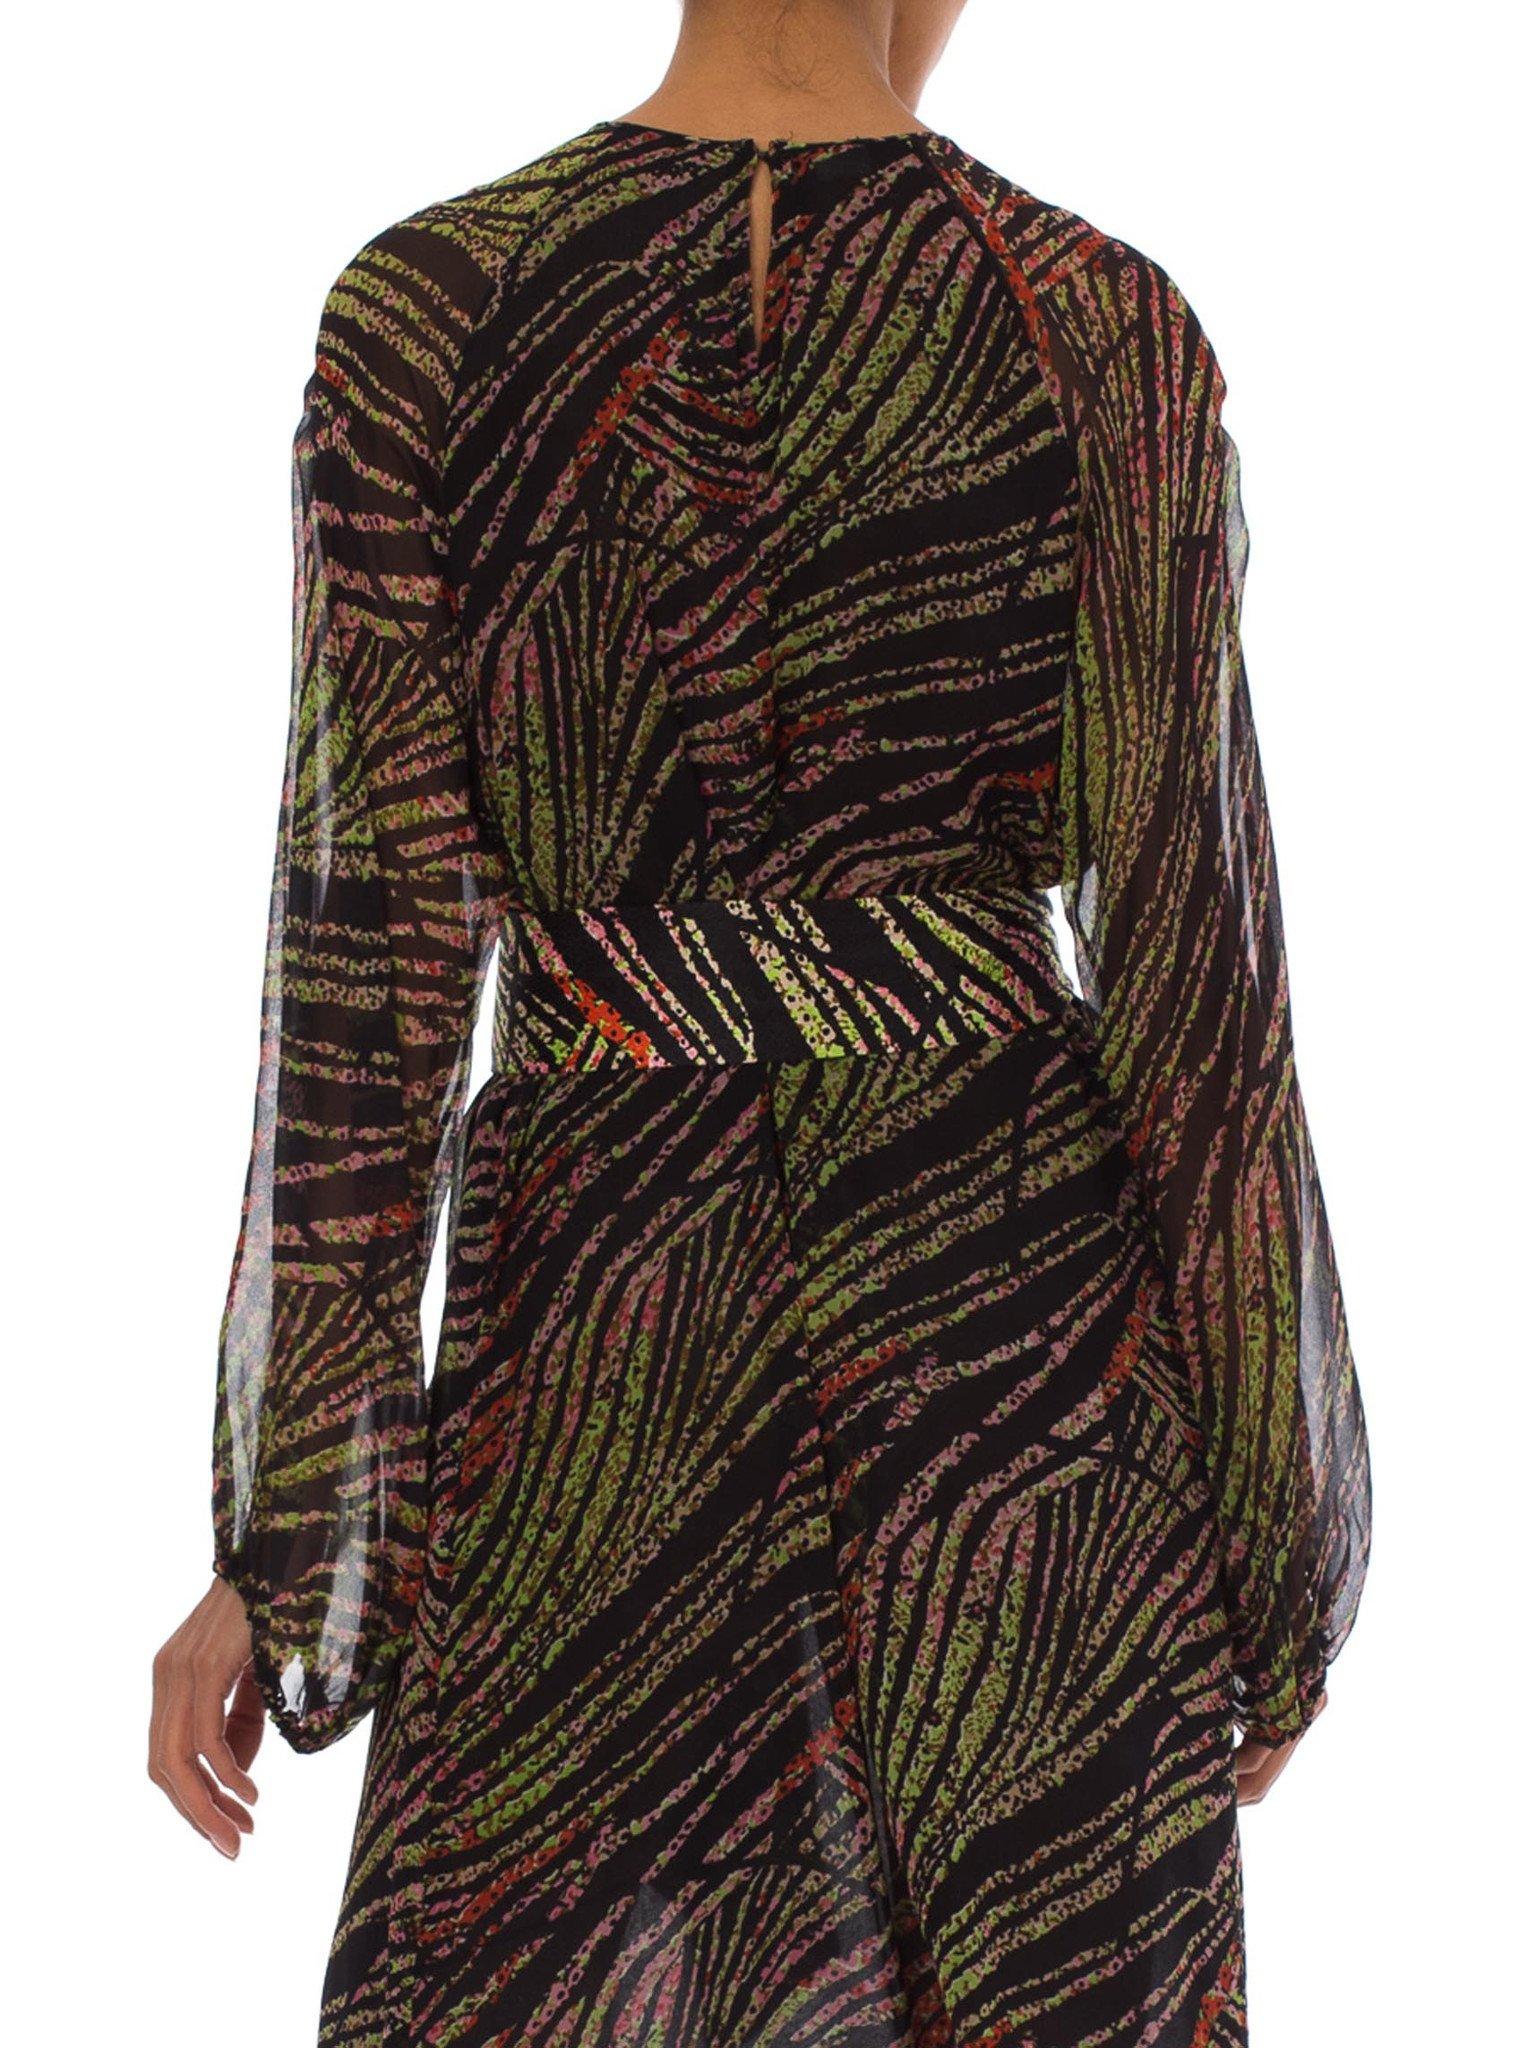 Robe à manches longues en mousseline de soie abstraite tropicale à biais avec couture française, années 1970 2